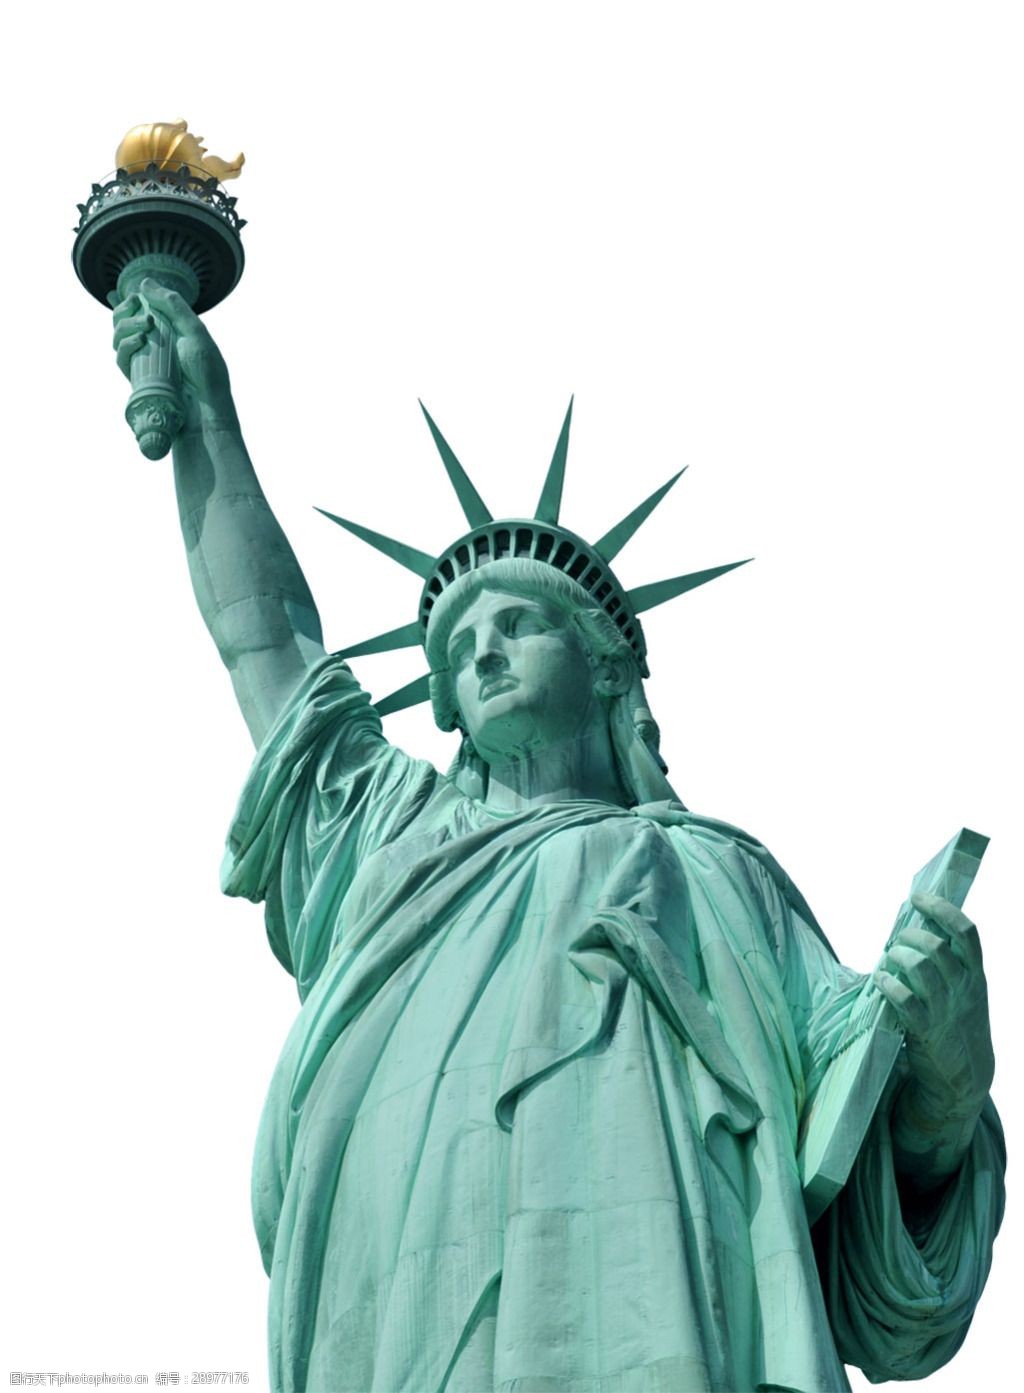 美国自由女神像的来历图片